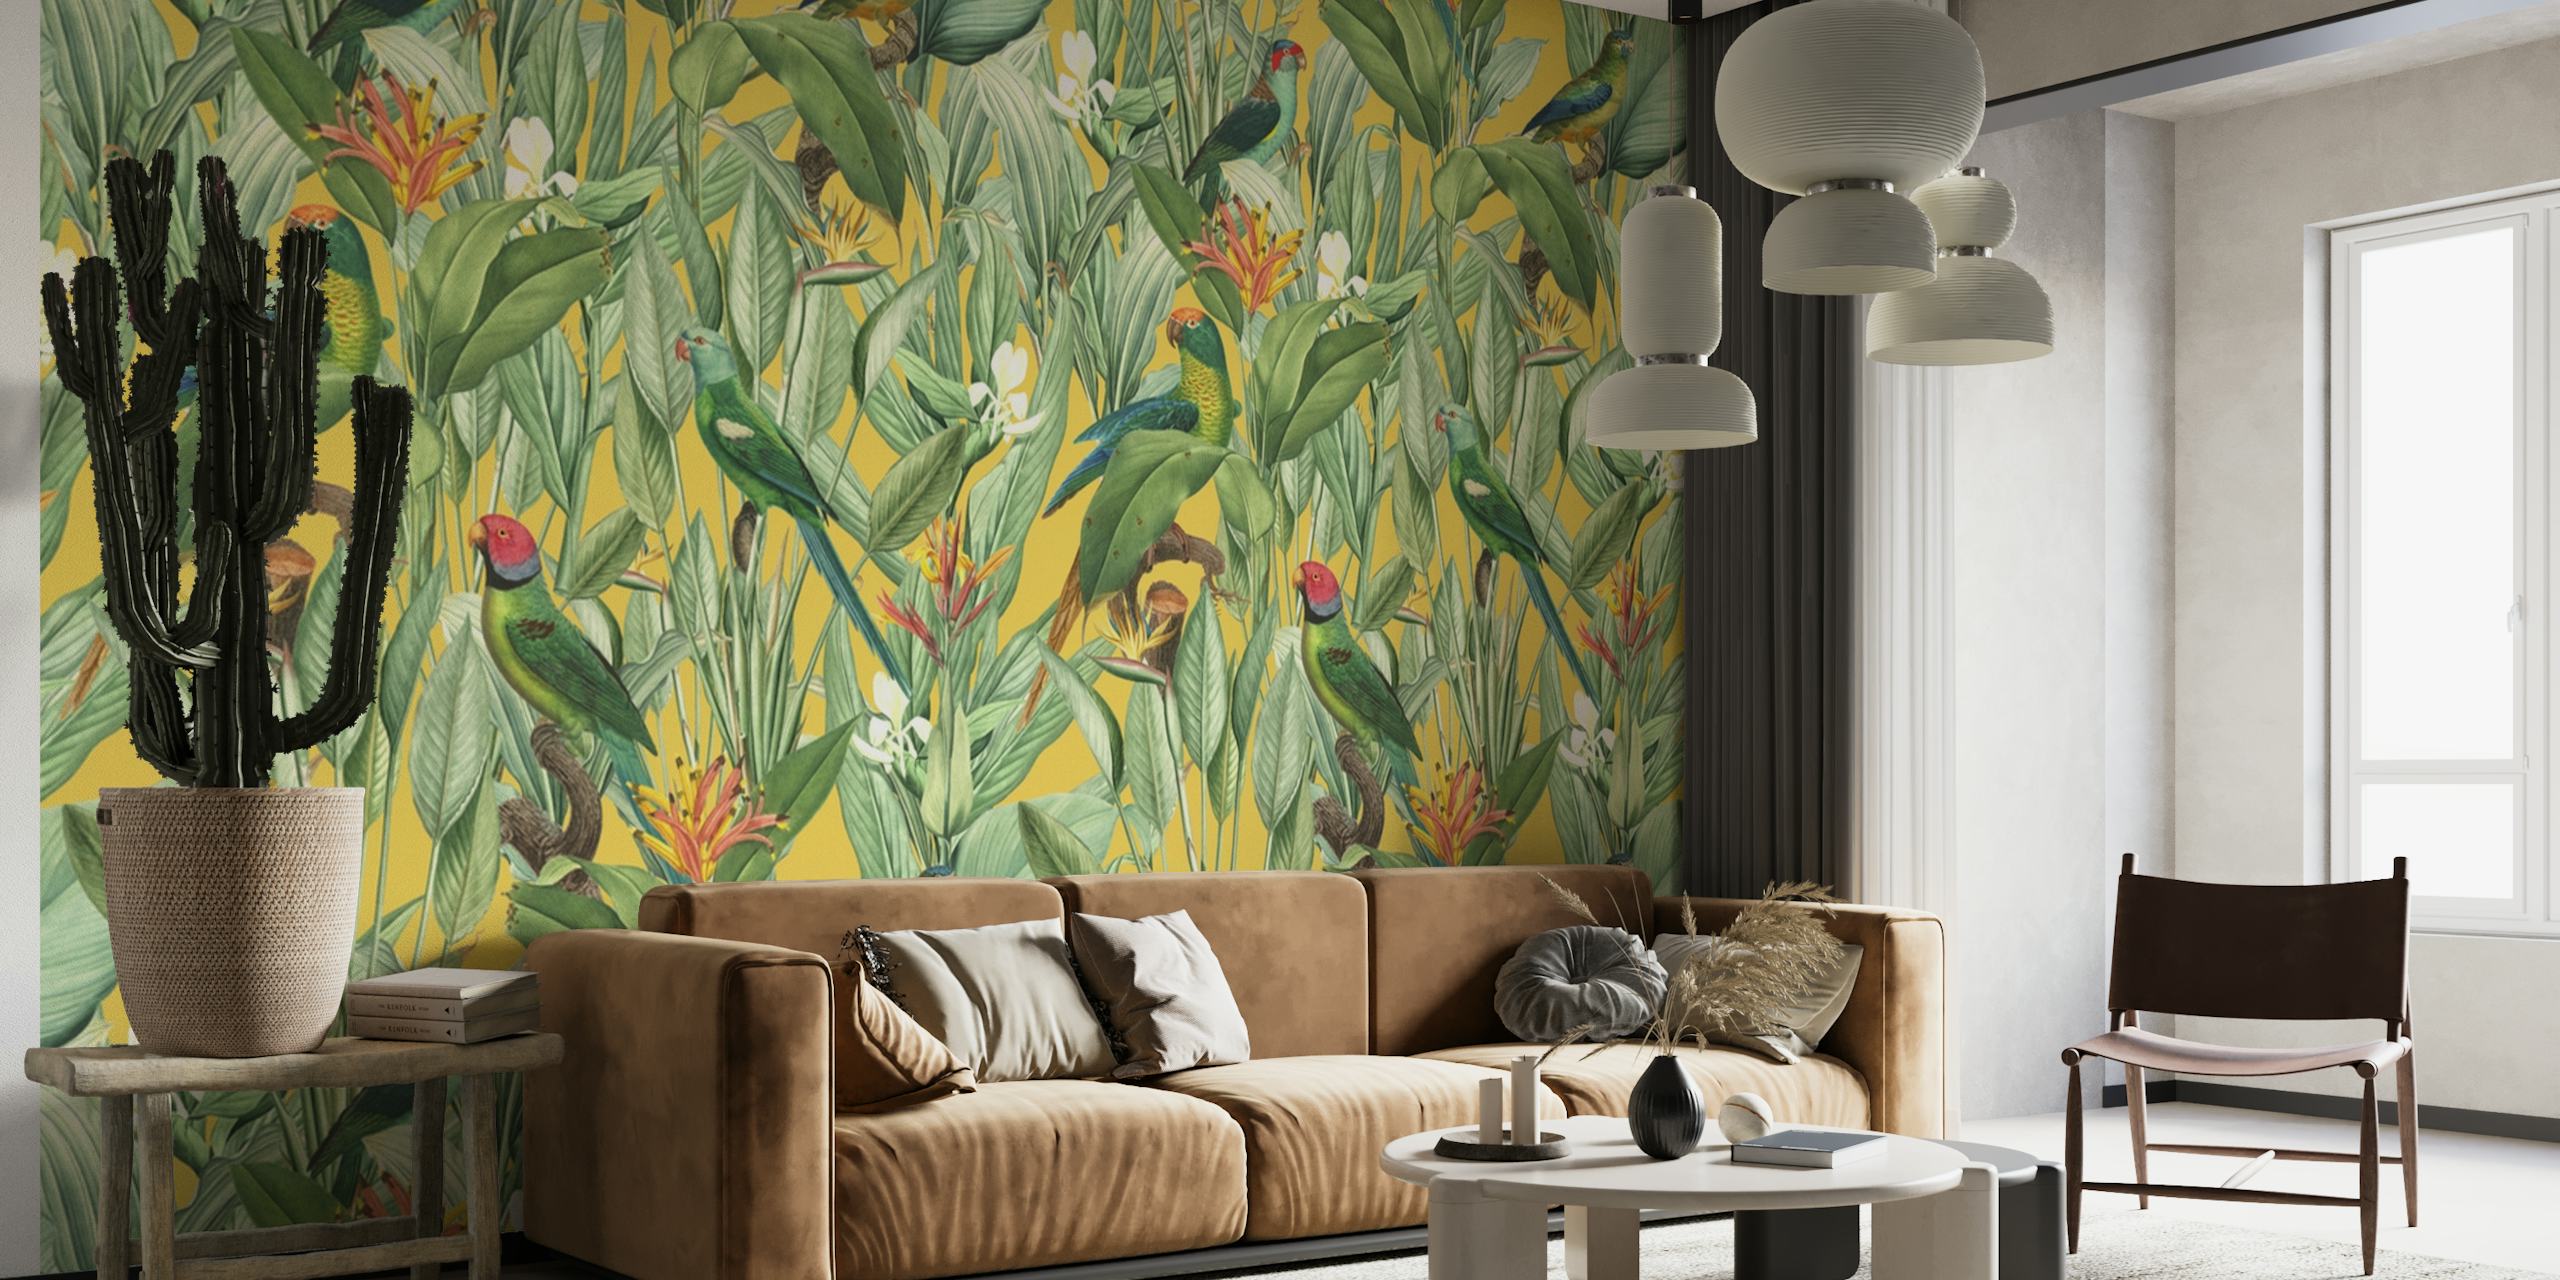 Mural de parede de inspiração vintage apresentando uma cena de selva tropical com detalhes dourados